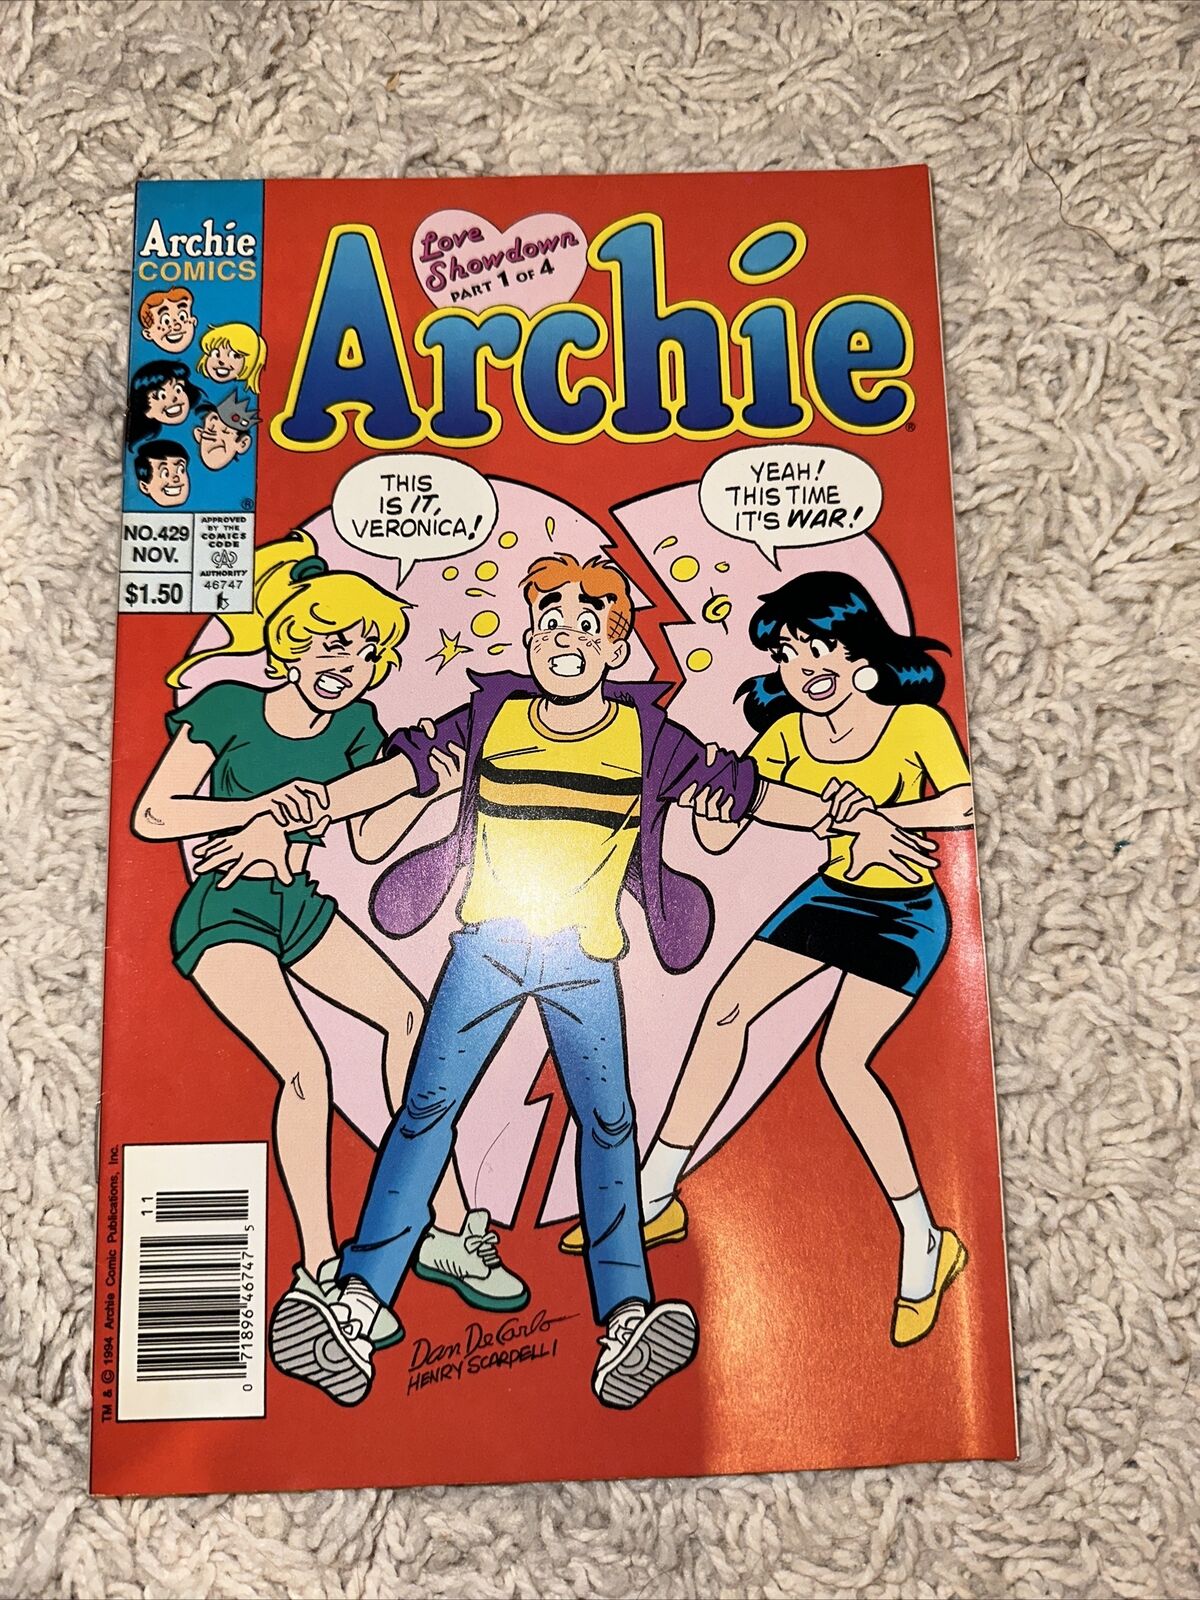 Archie Comics Archie Love Showdown Part 1 of 4 November 1994 No 429